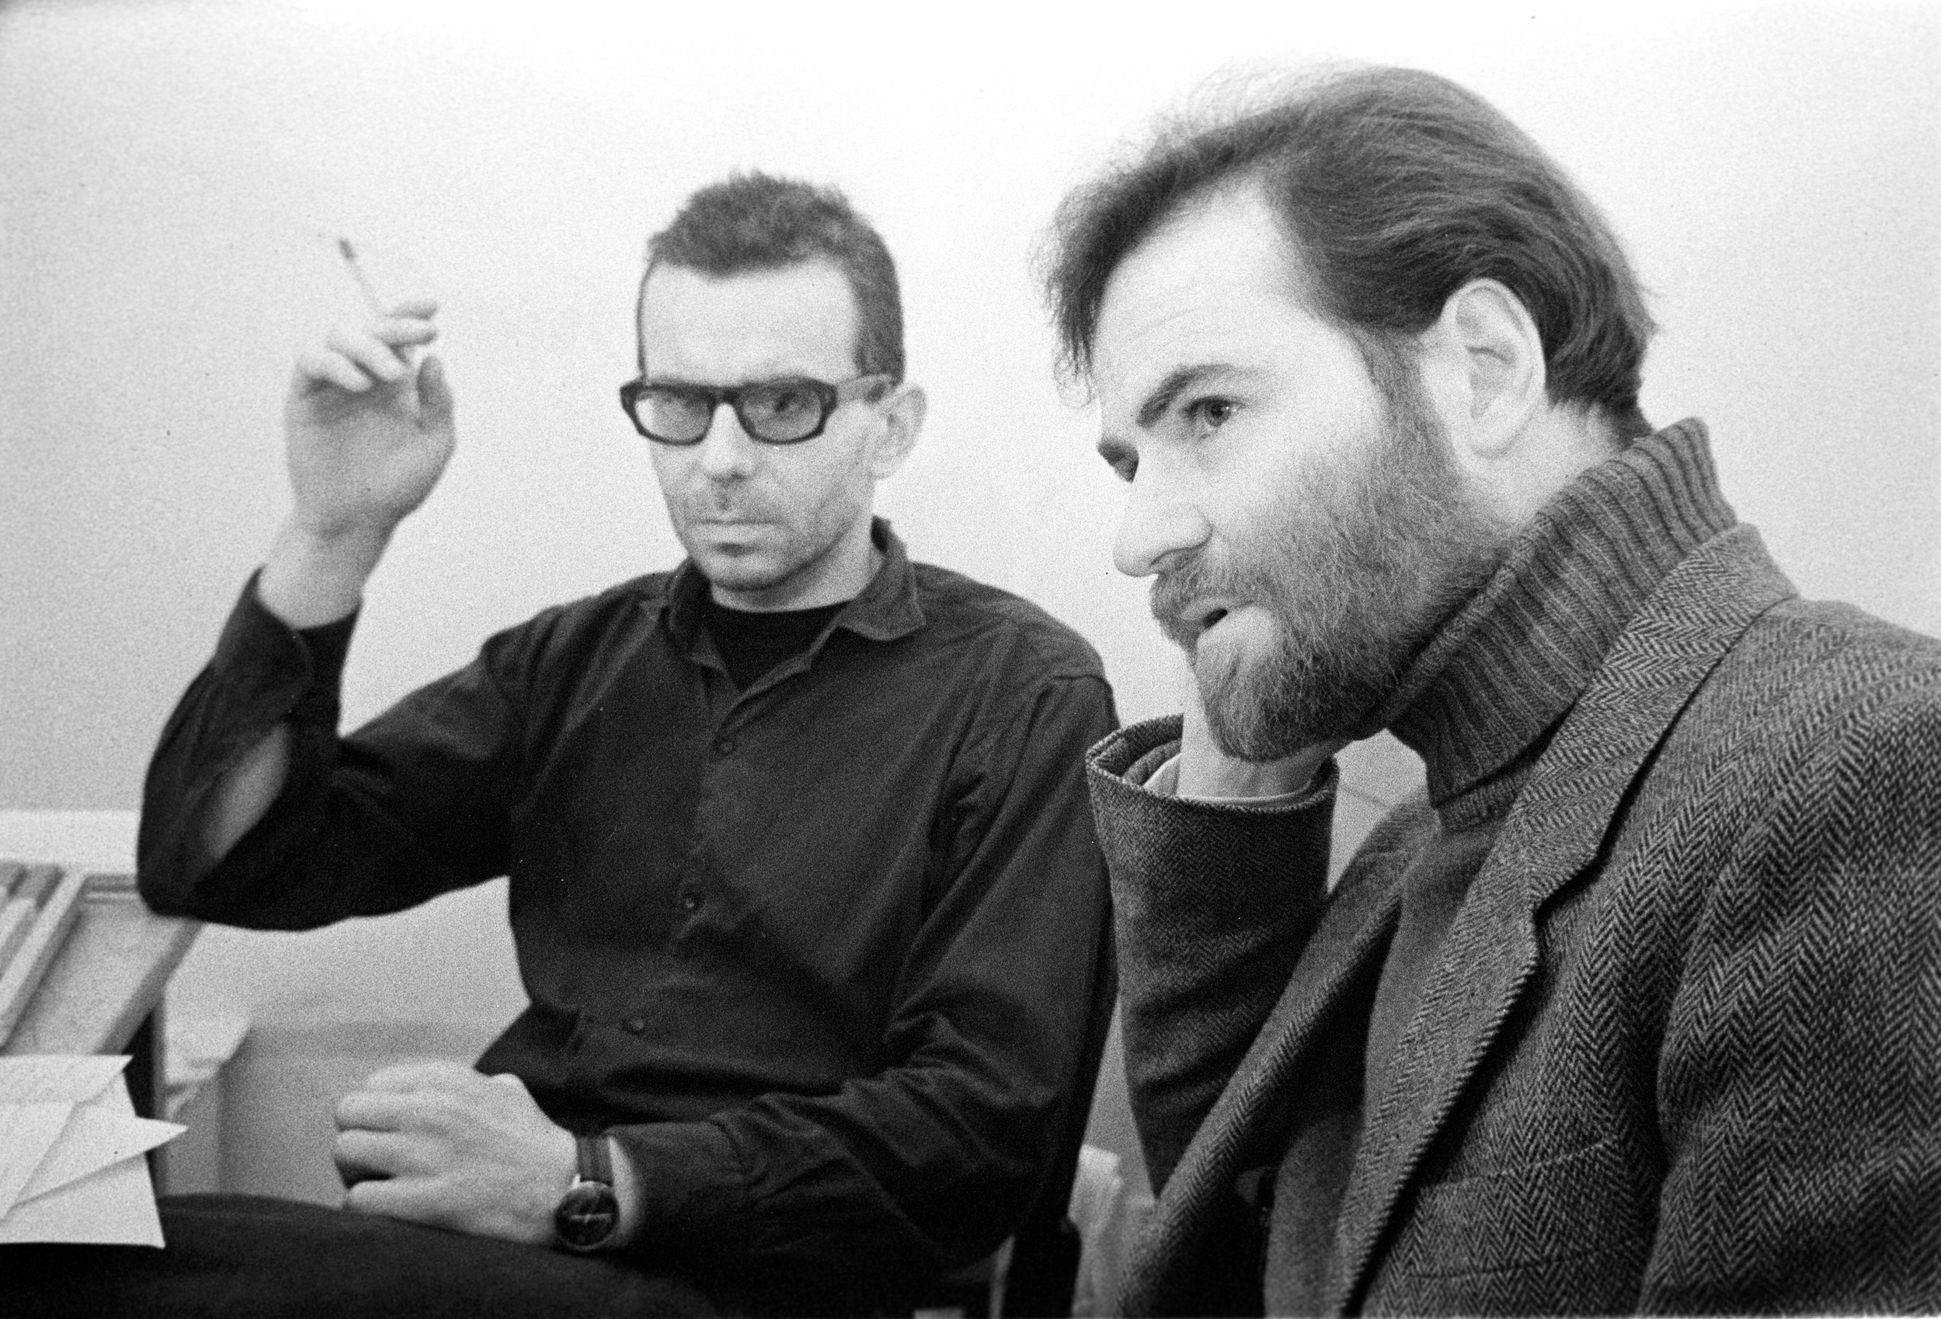 Zakladatel Respektu Ivan Lamper (vlevo) v rozpravě s Timothy G. Ashem v redakci Informačního servisu na konci roku 1989.